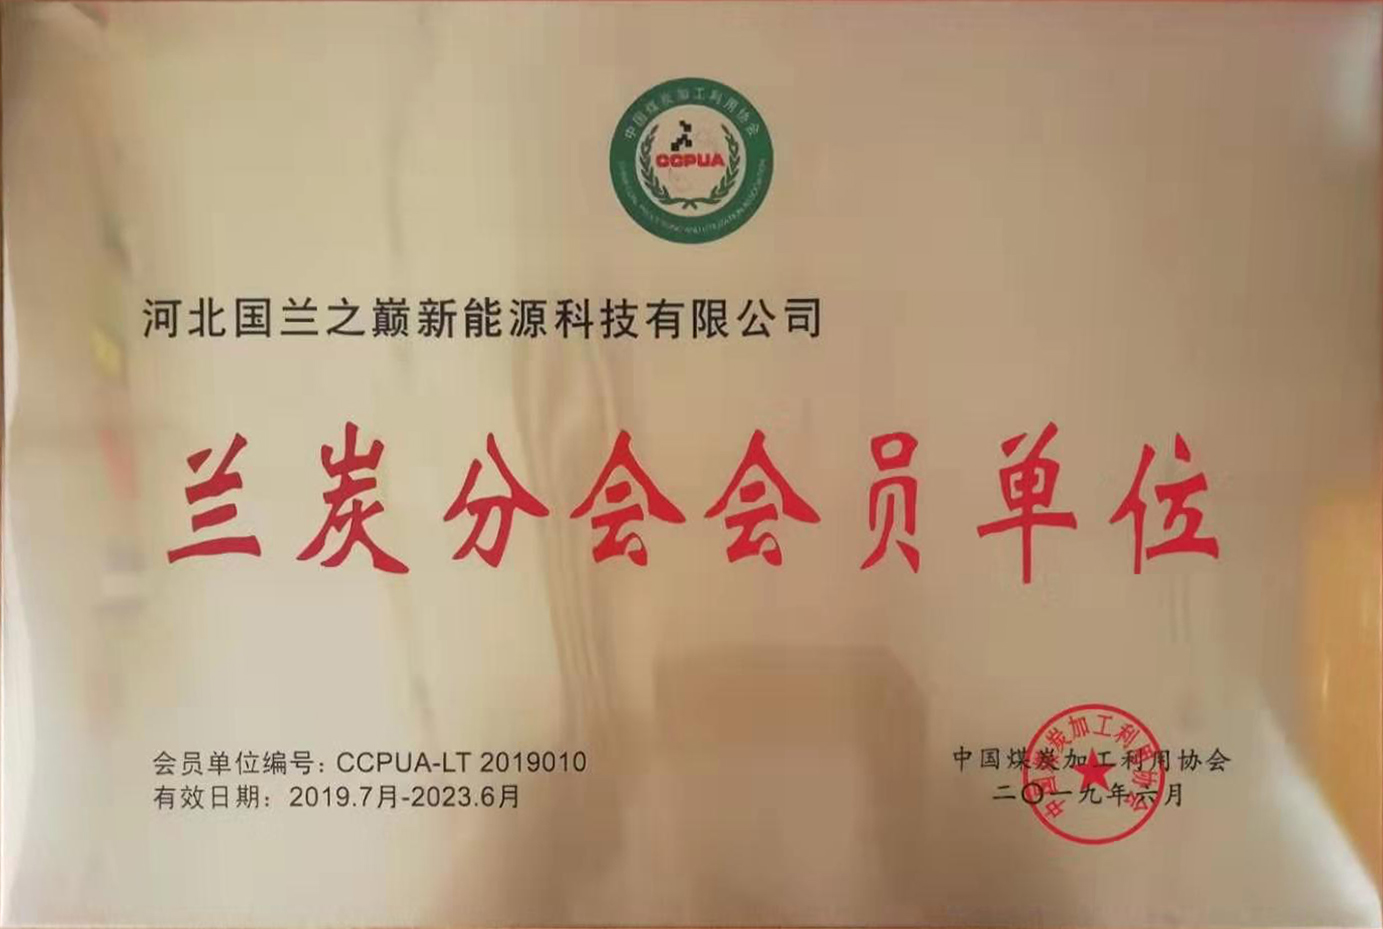 祝贺我司成为 中国煤炭加工利用协会兰炭分会 会员单位.jpg